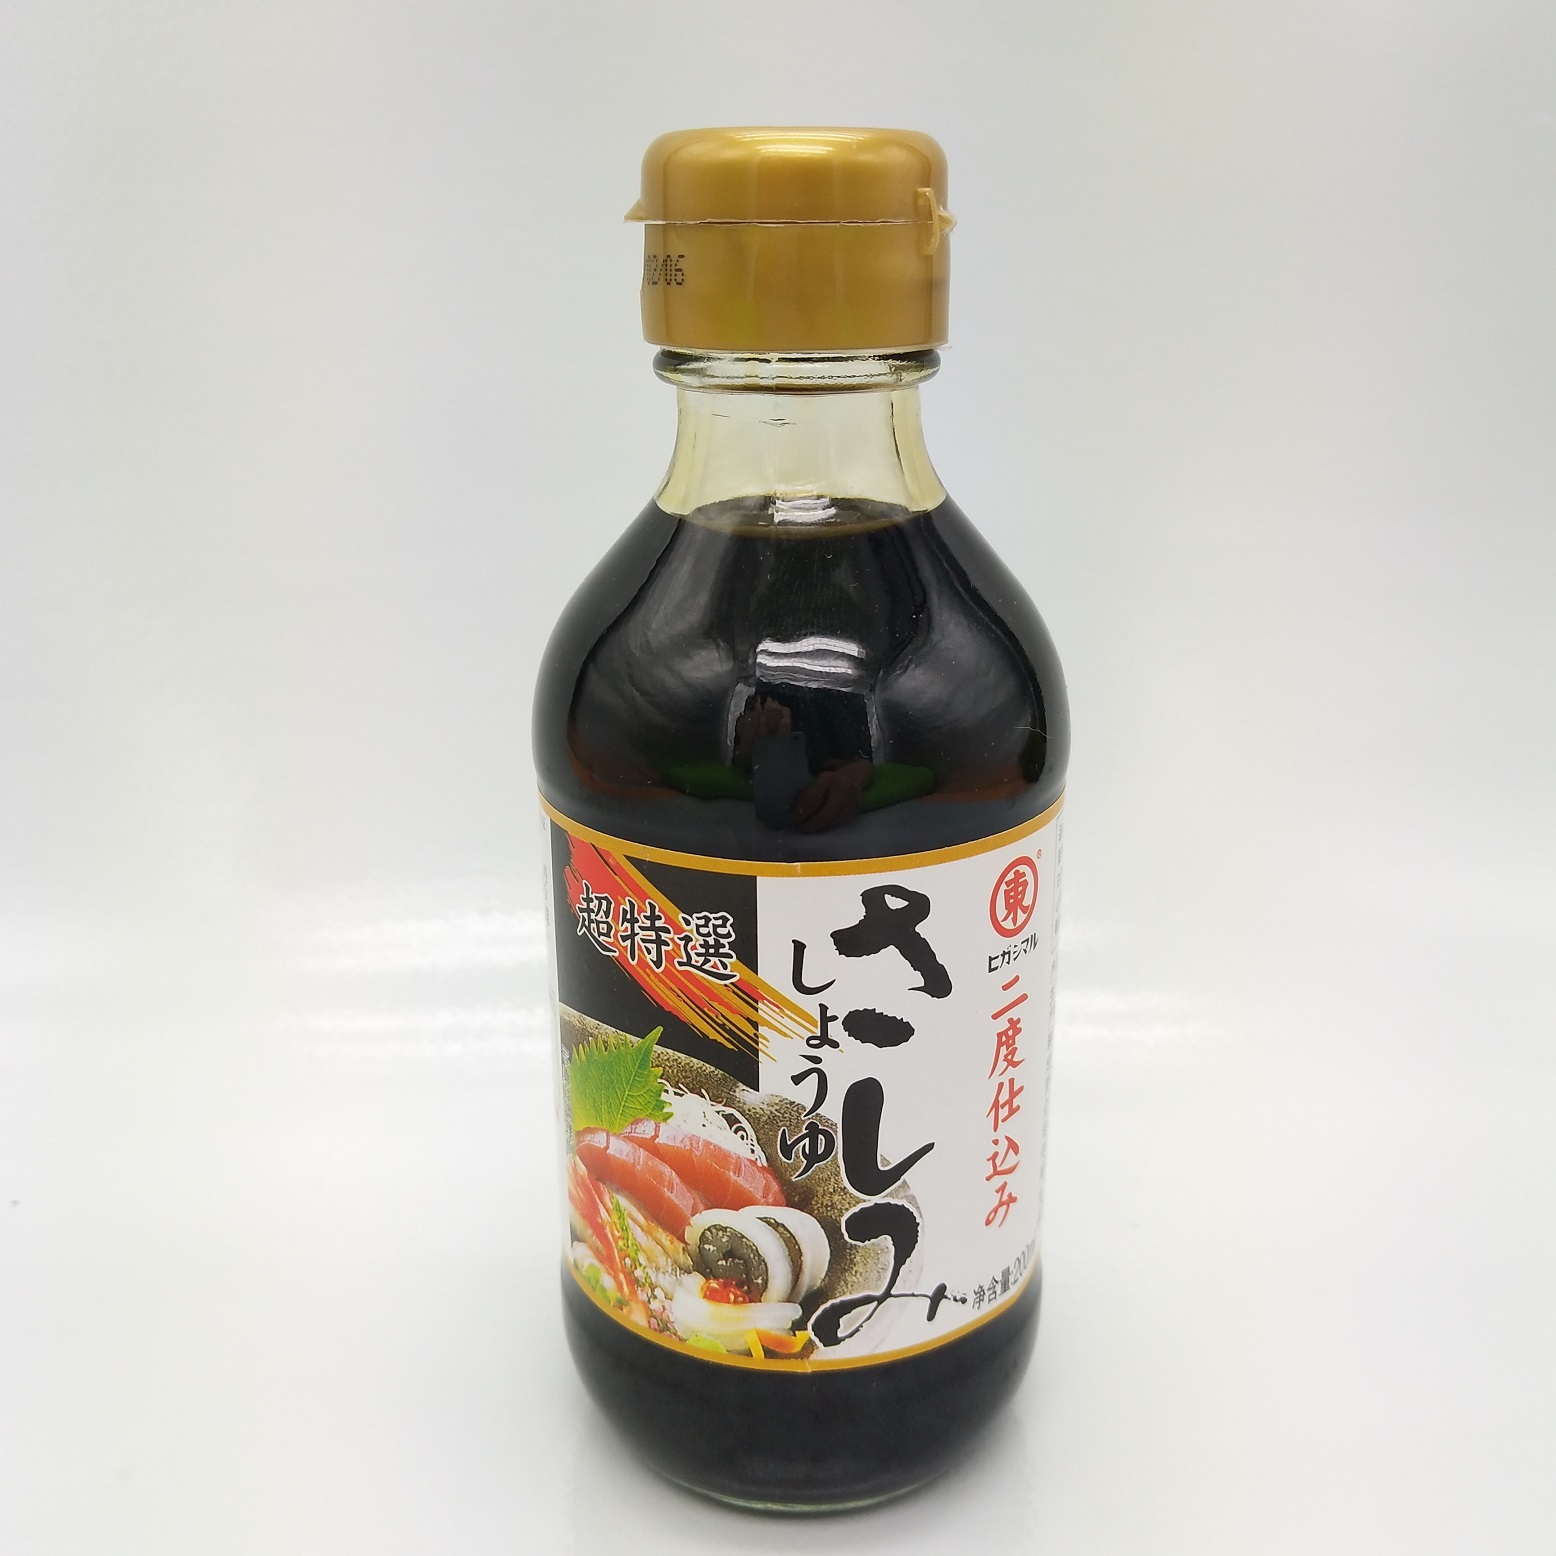 日本蒸鱼豉油图片